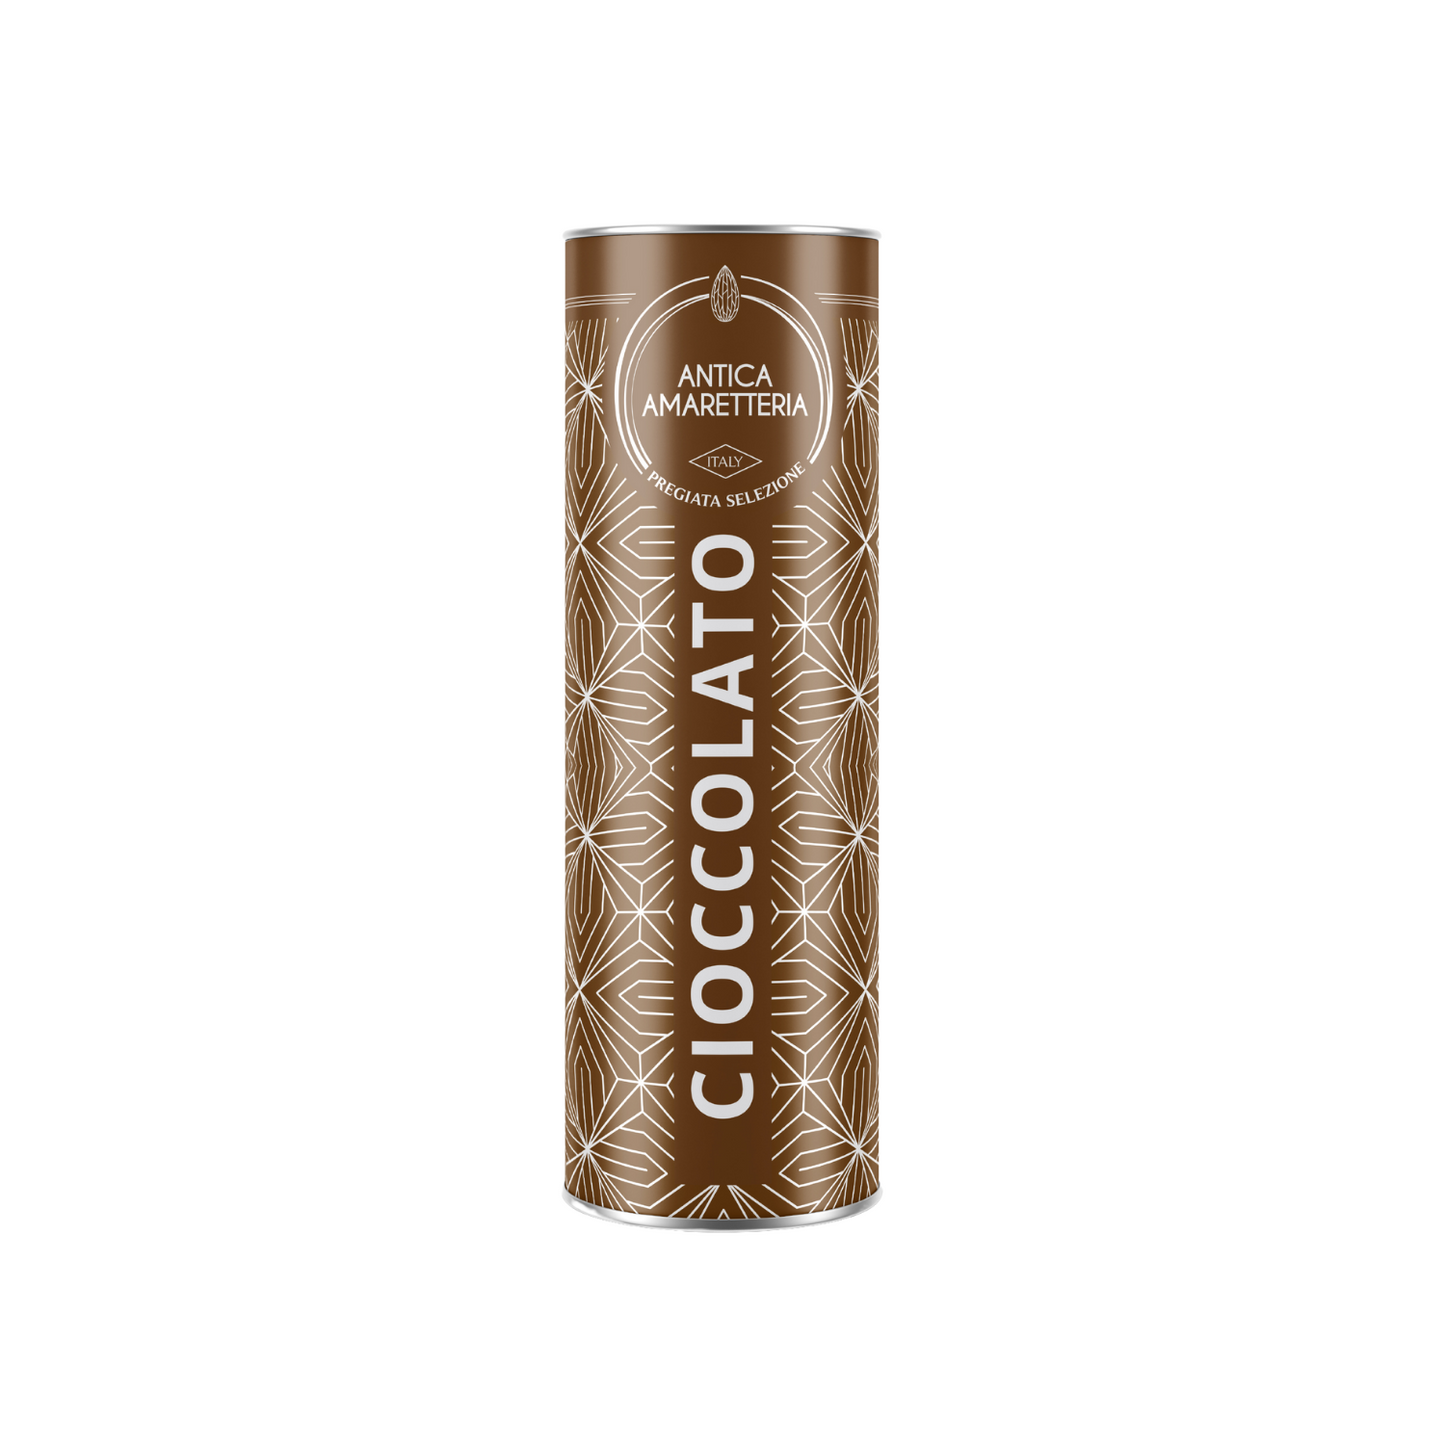 Amaretti Morbidi in tubo al Cioccolato - GIFT BOX - 150gr